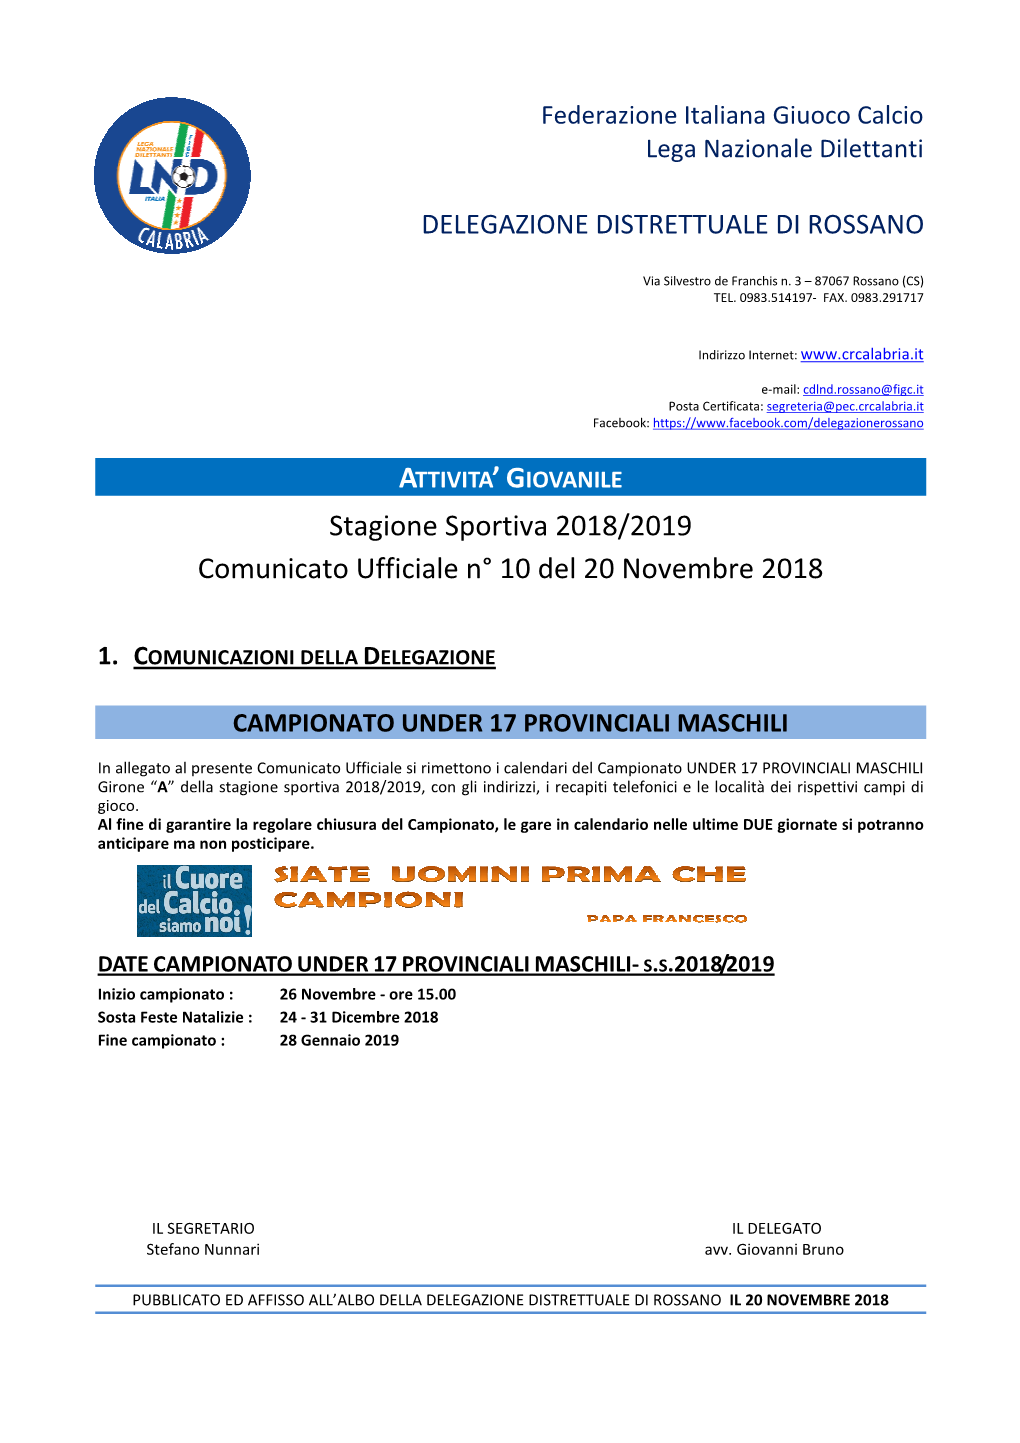 Stagione Sportiva 2018/2019 Comunicato Ufficiale N° 10 Del 20 Novembre 2018